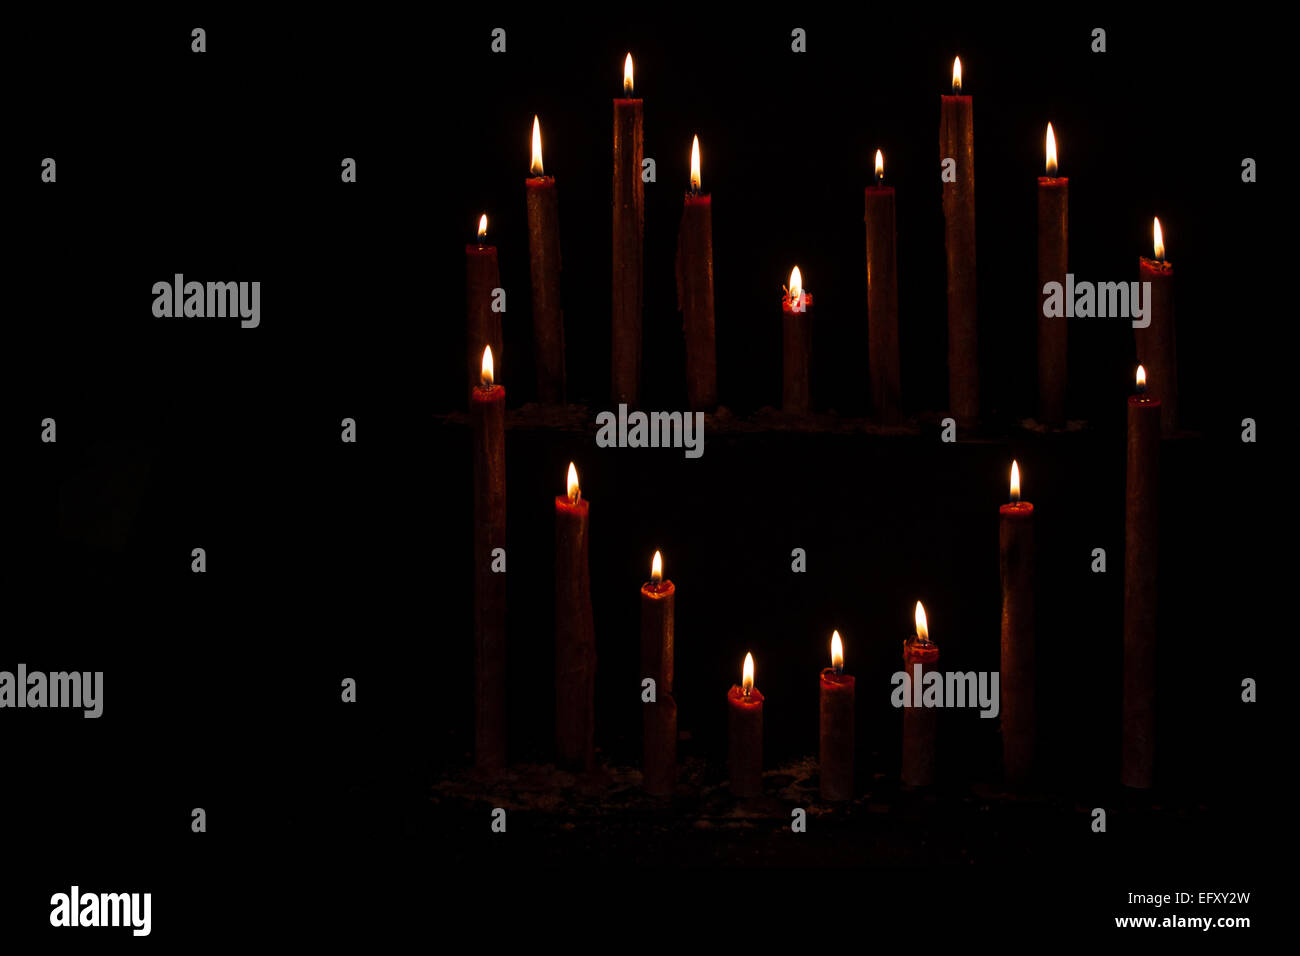 Ardente amore forma candele in uno sfondo scuro, con spazio per i progettisti di testo Foto Stock